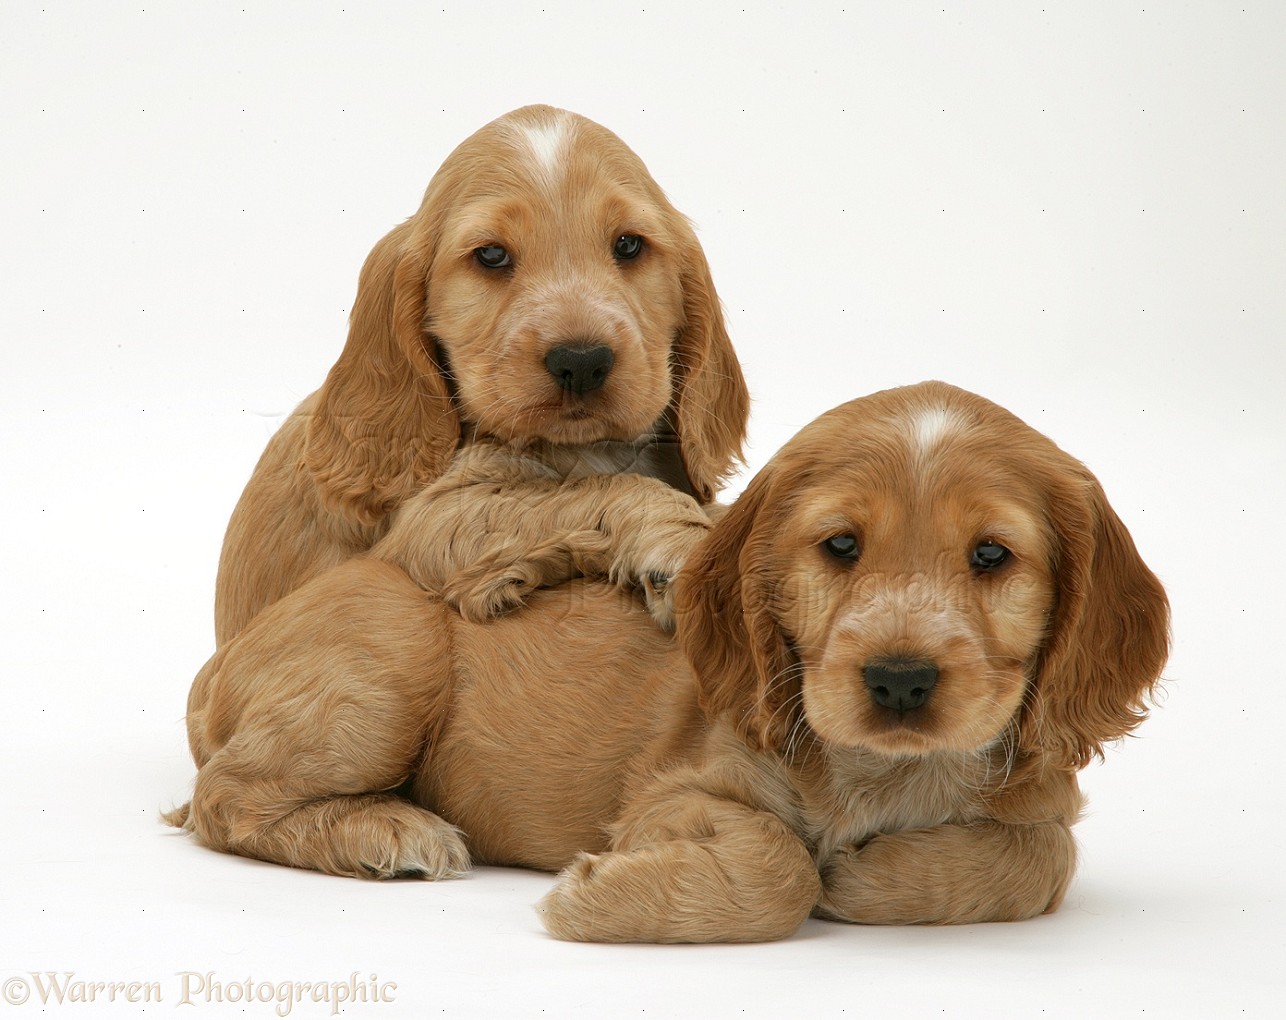 Russian Spaniel Puppies: Russian Cute Little Puppy Cute Puppies Fanpop Fanclubs Breed